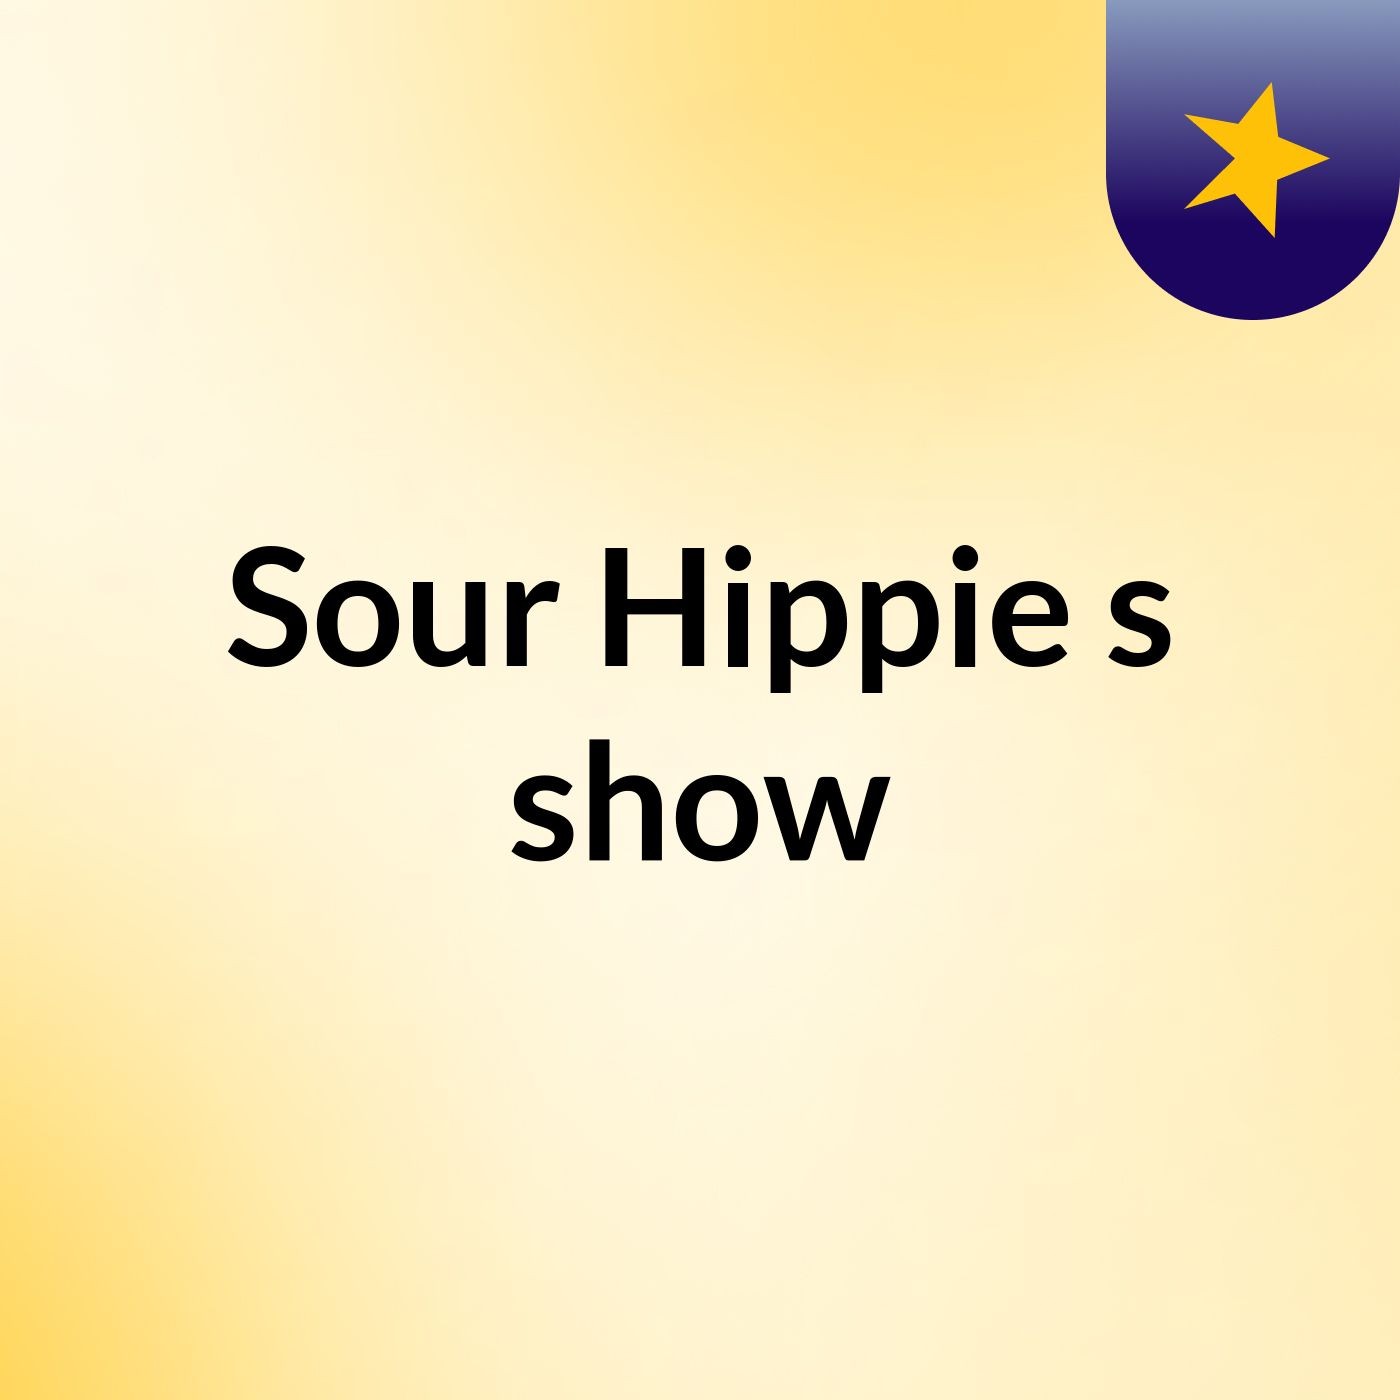 Sour Hippie's show